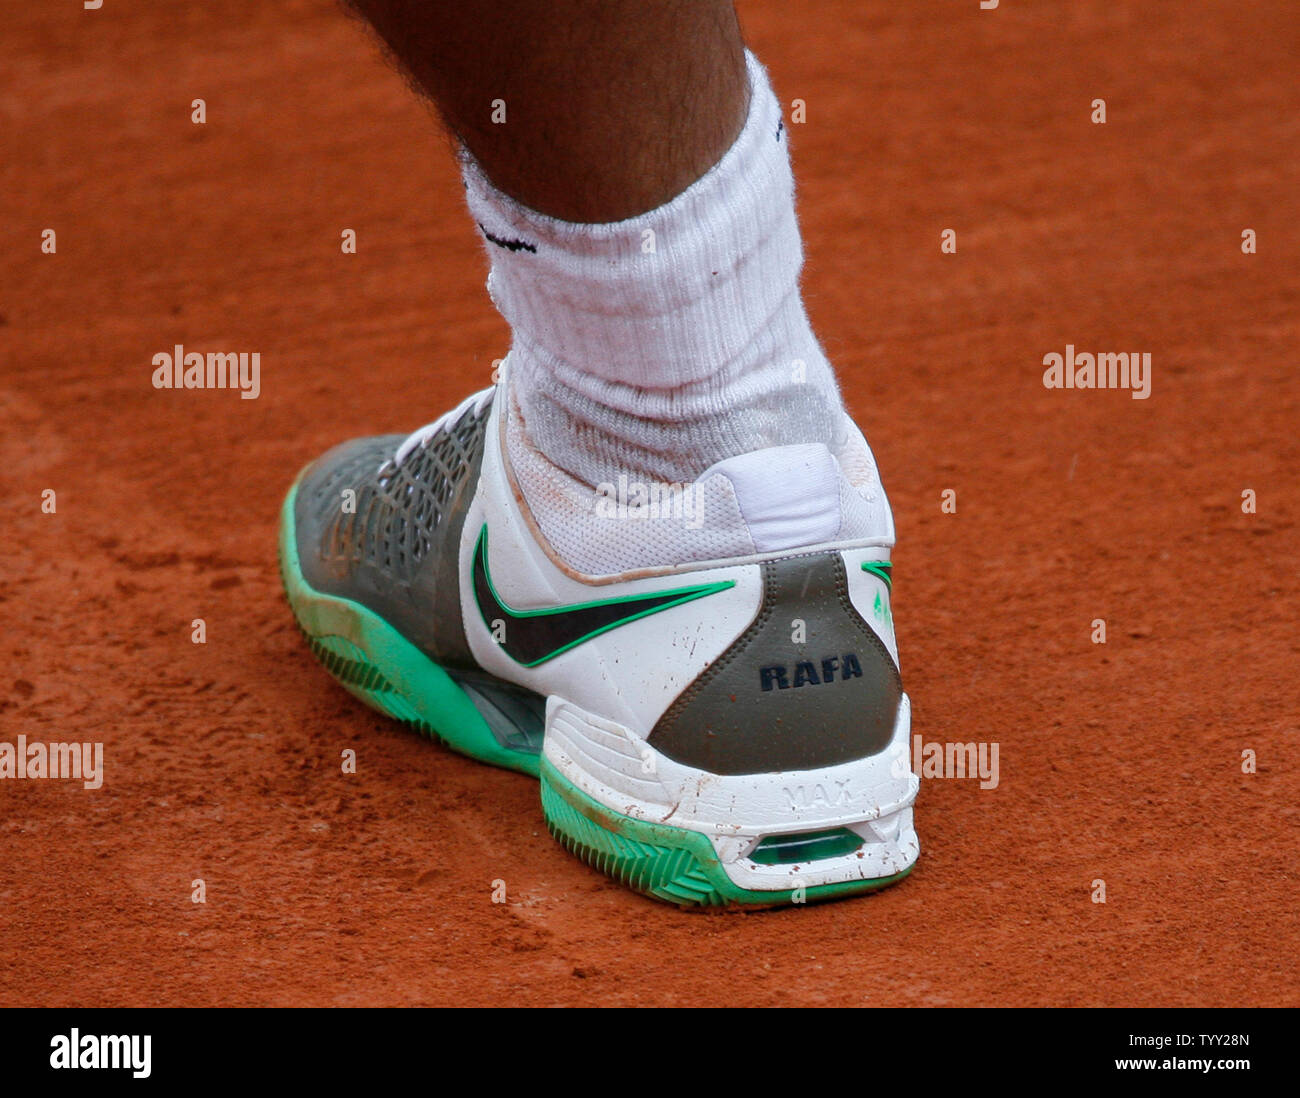 Rafael Nadal España calzado deportivo con apodo de 'Rafa' en ellos durante su quarterfinal coinciden con Nicolás Almagro de España Abierto de Tenis de Francia en París, el